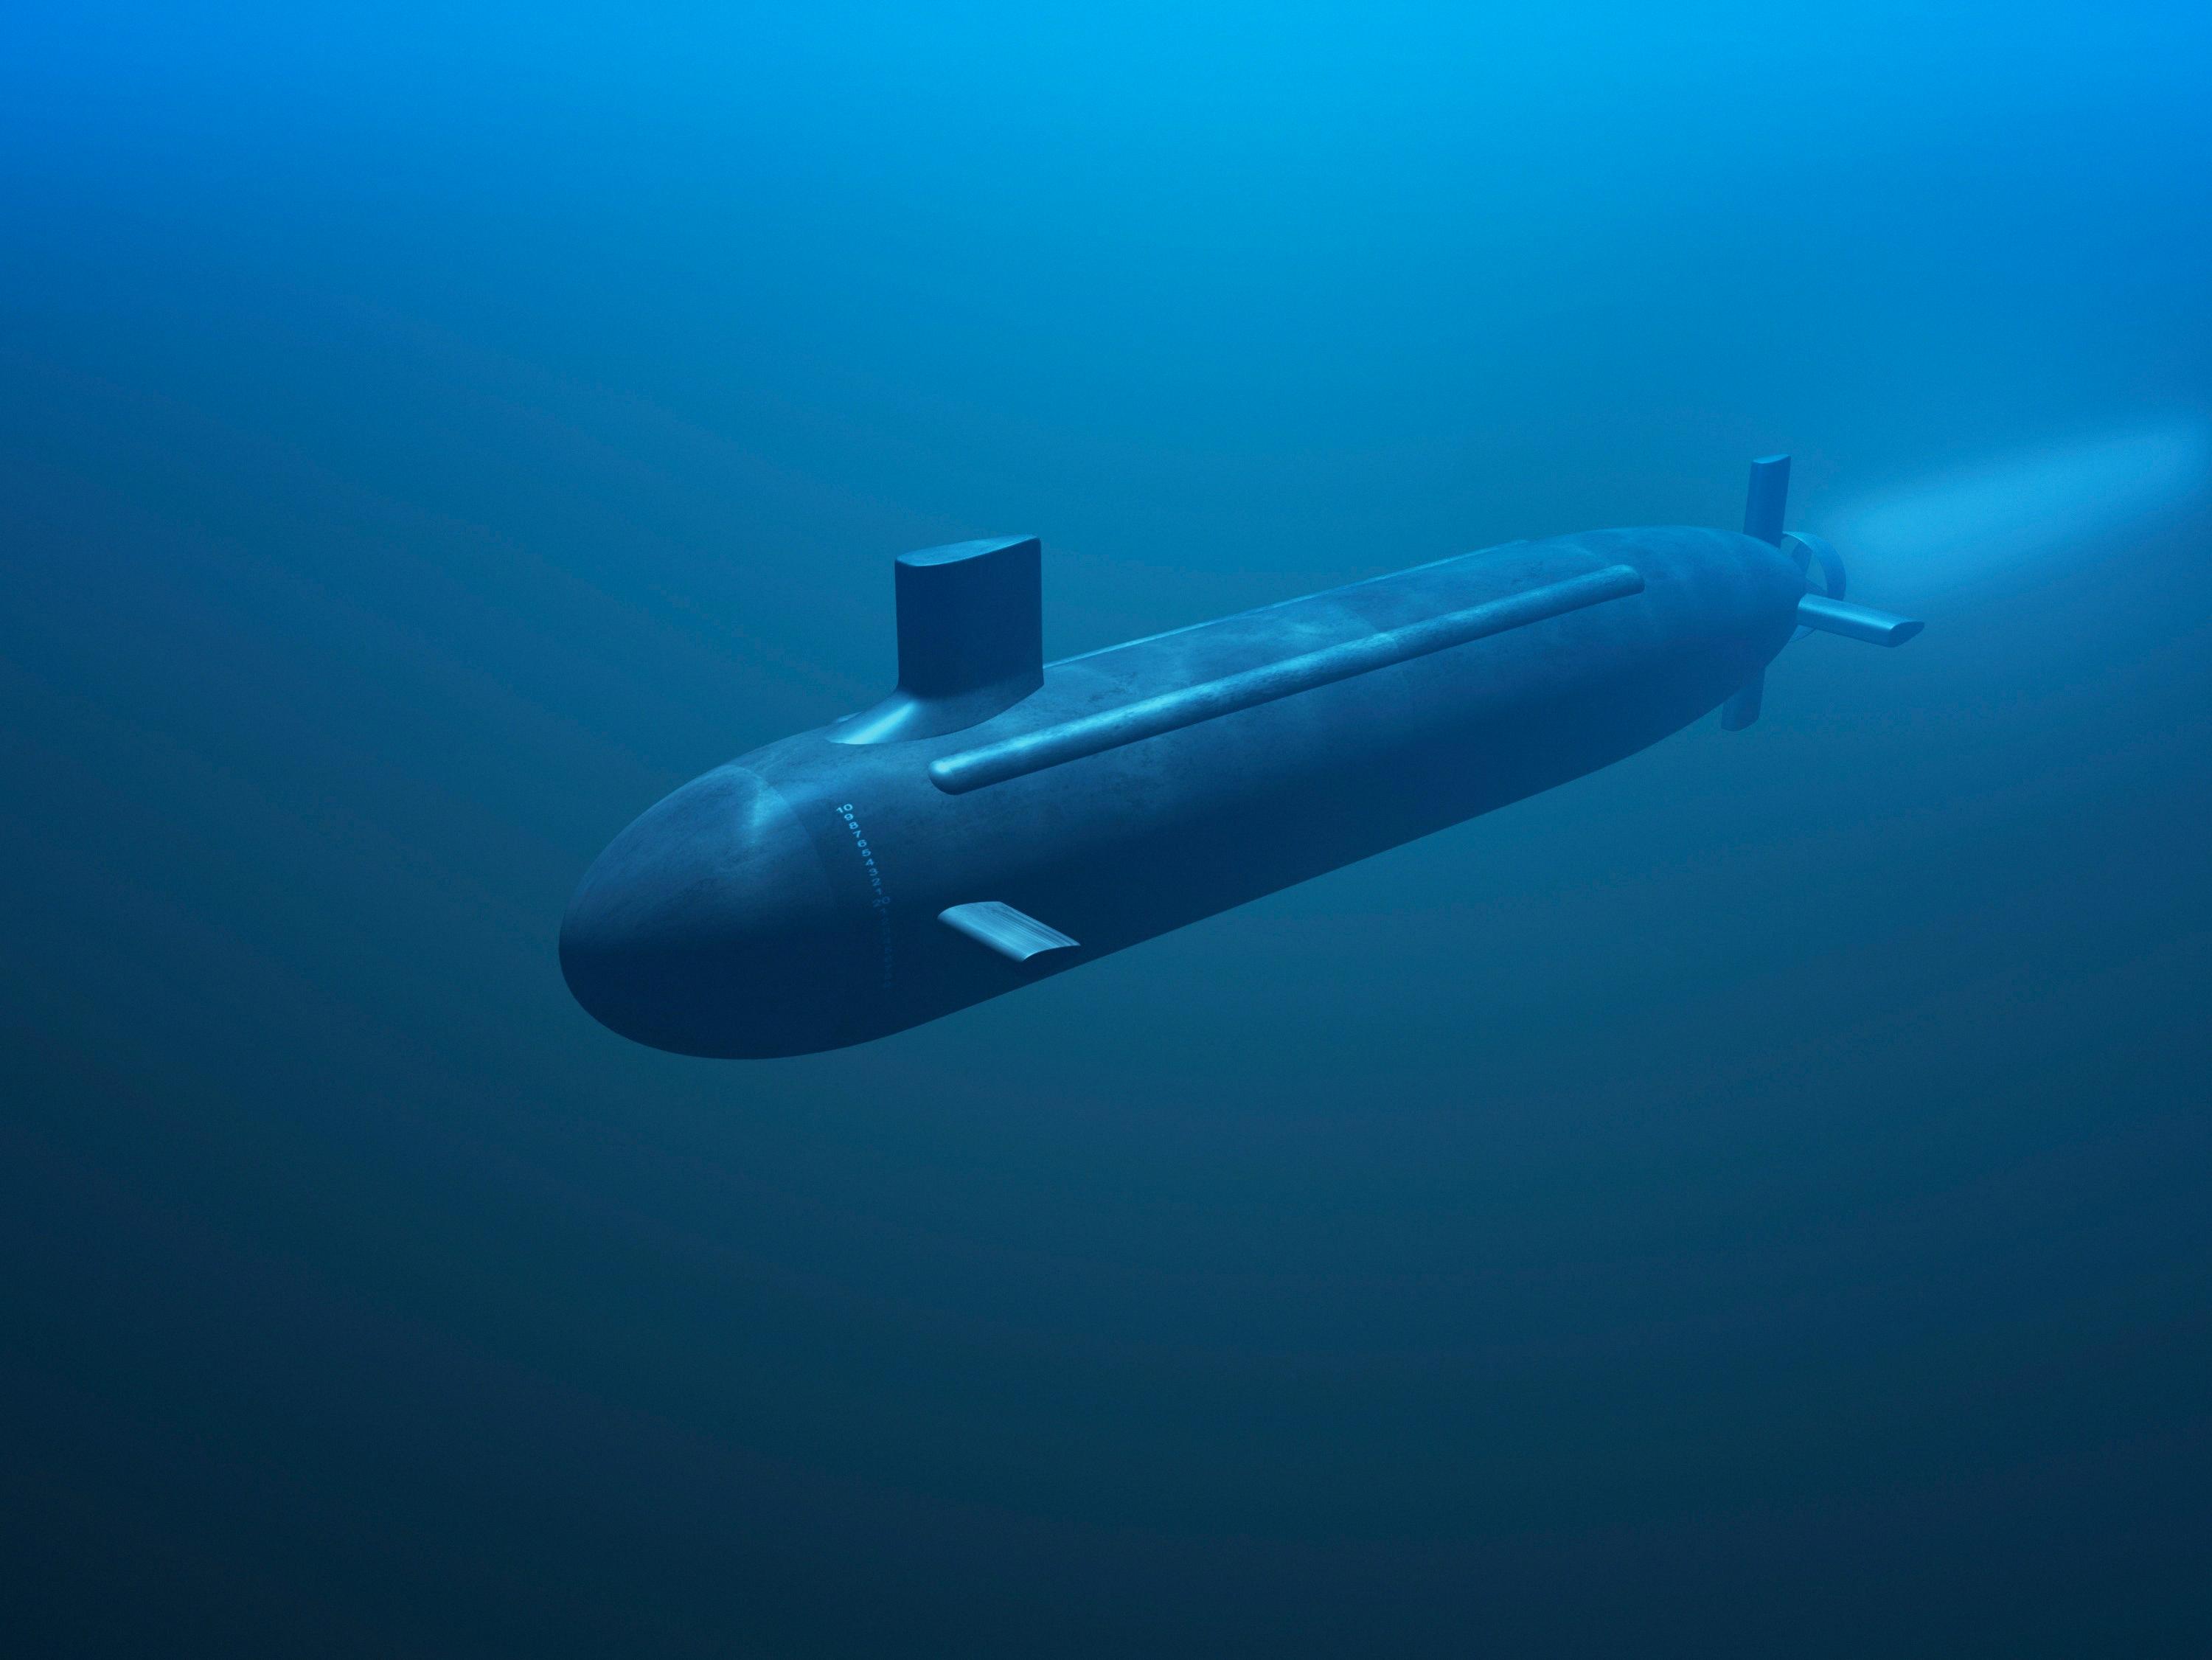 deepest a submarine can go